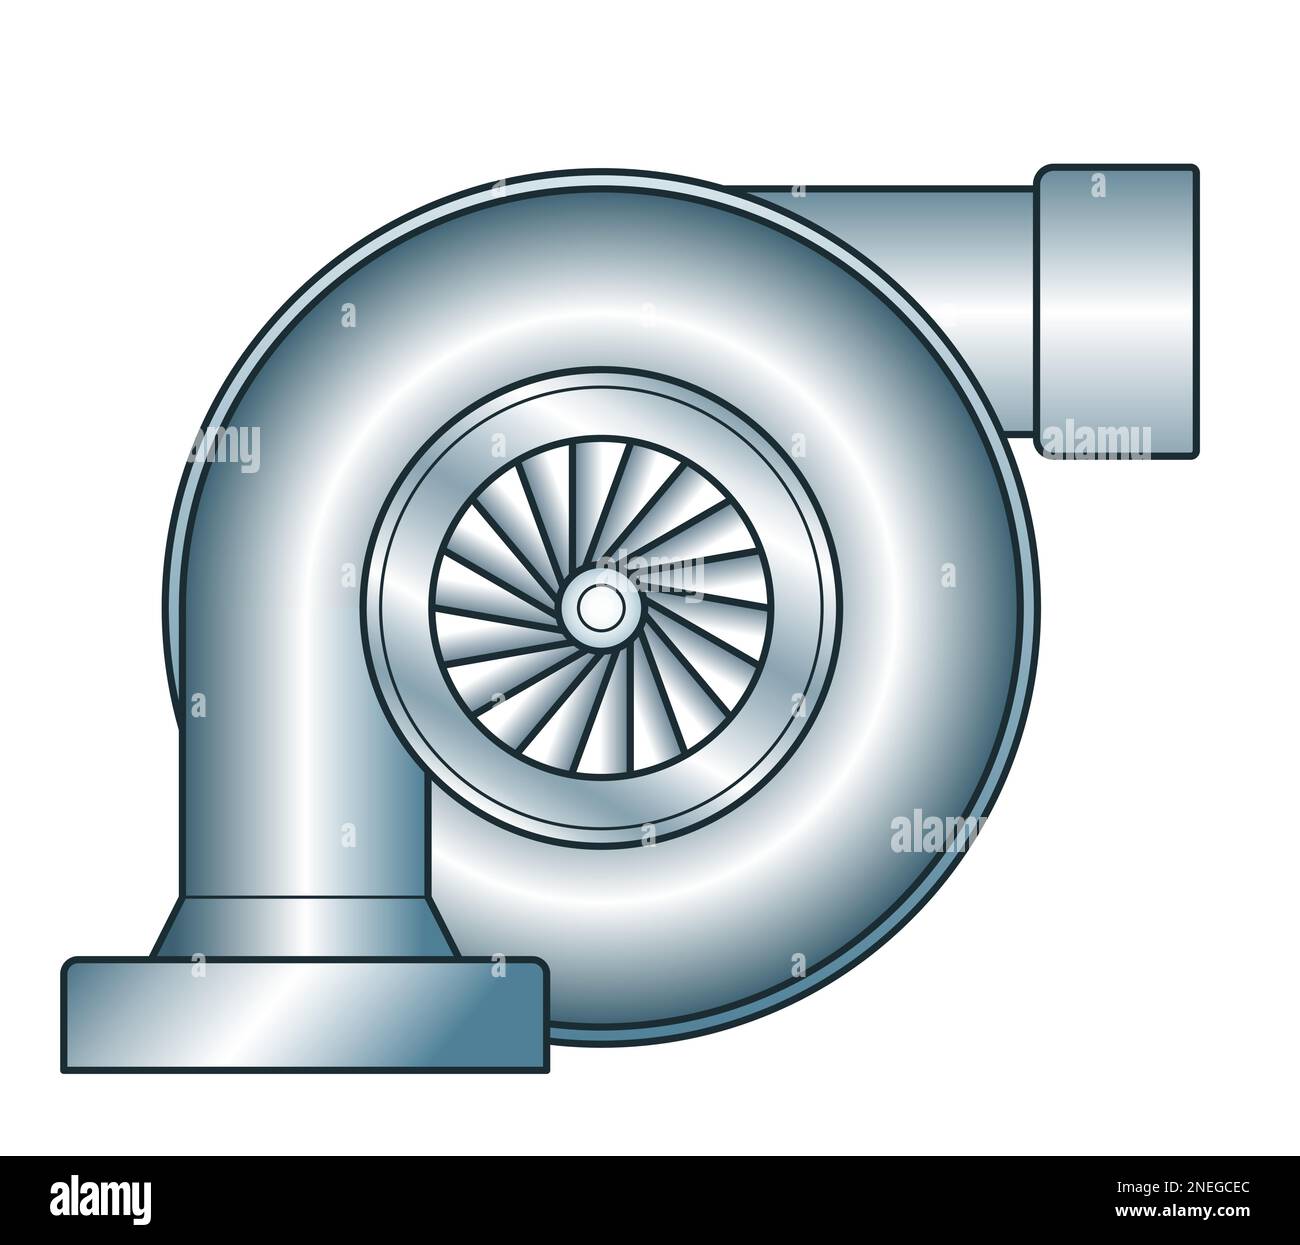 Illustrazione del compressore centrifugo assialsimmetrico dinamico Immagine  e Vettoriale - Alamy